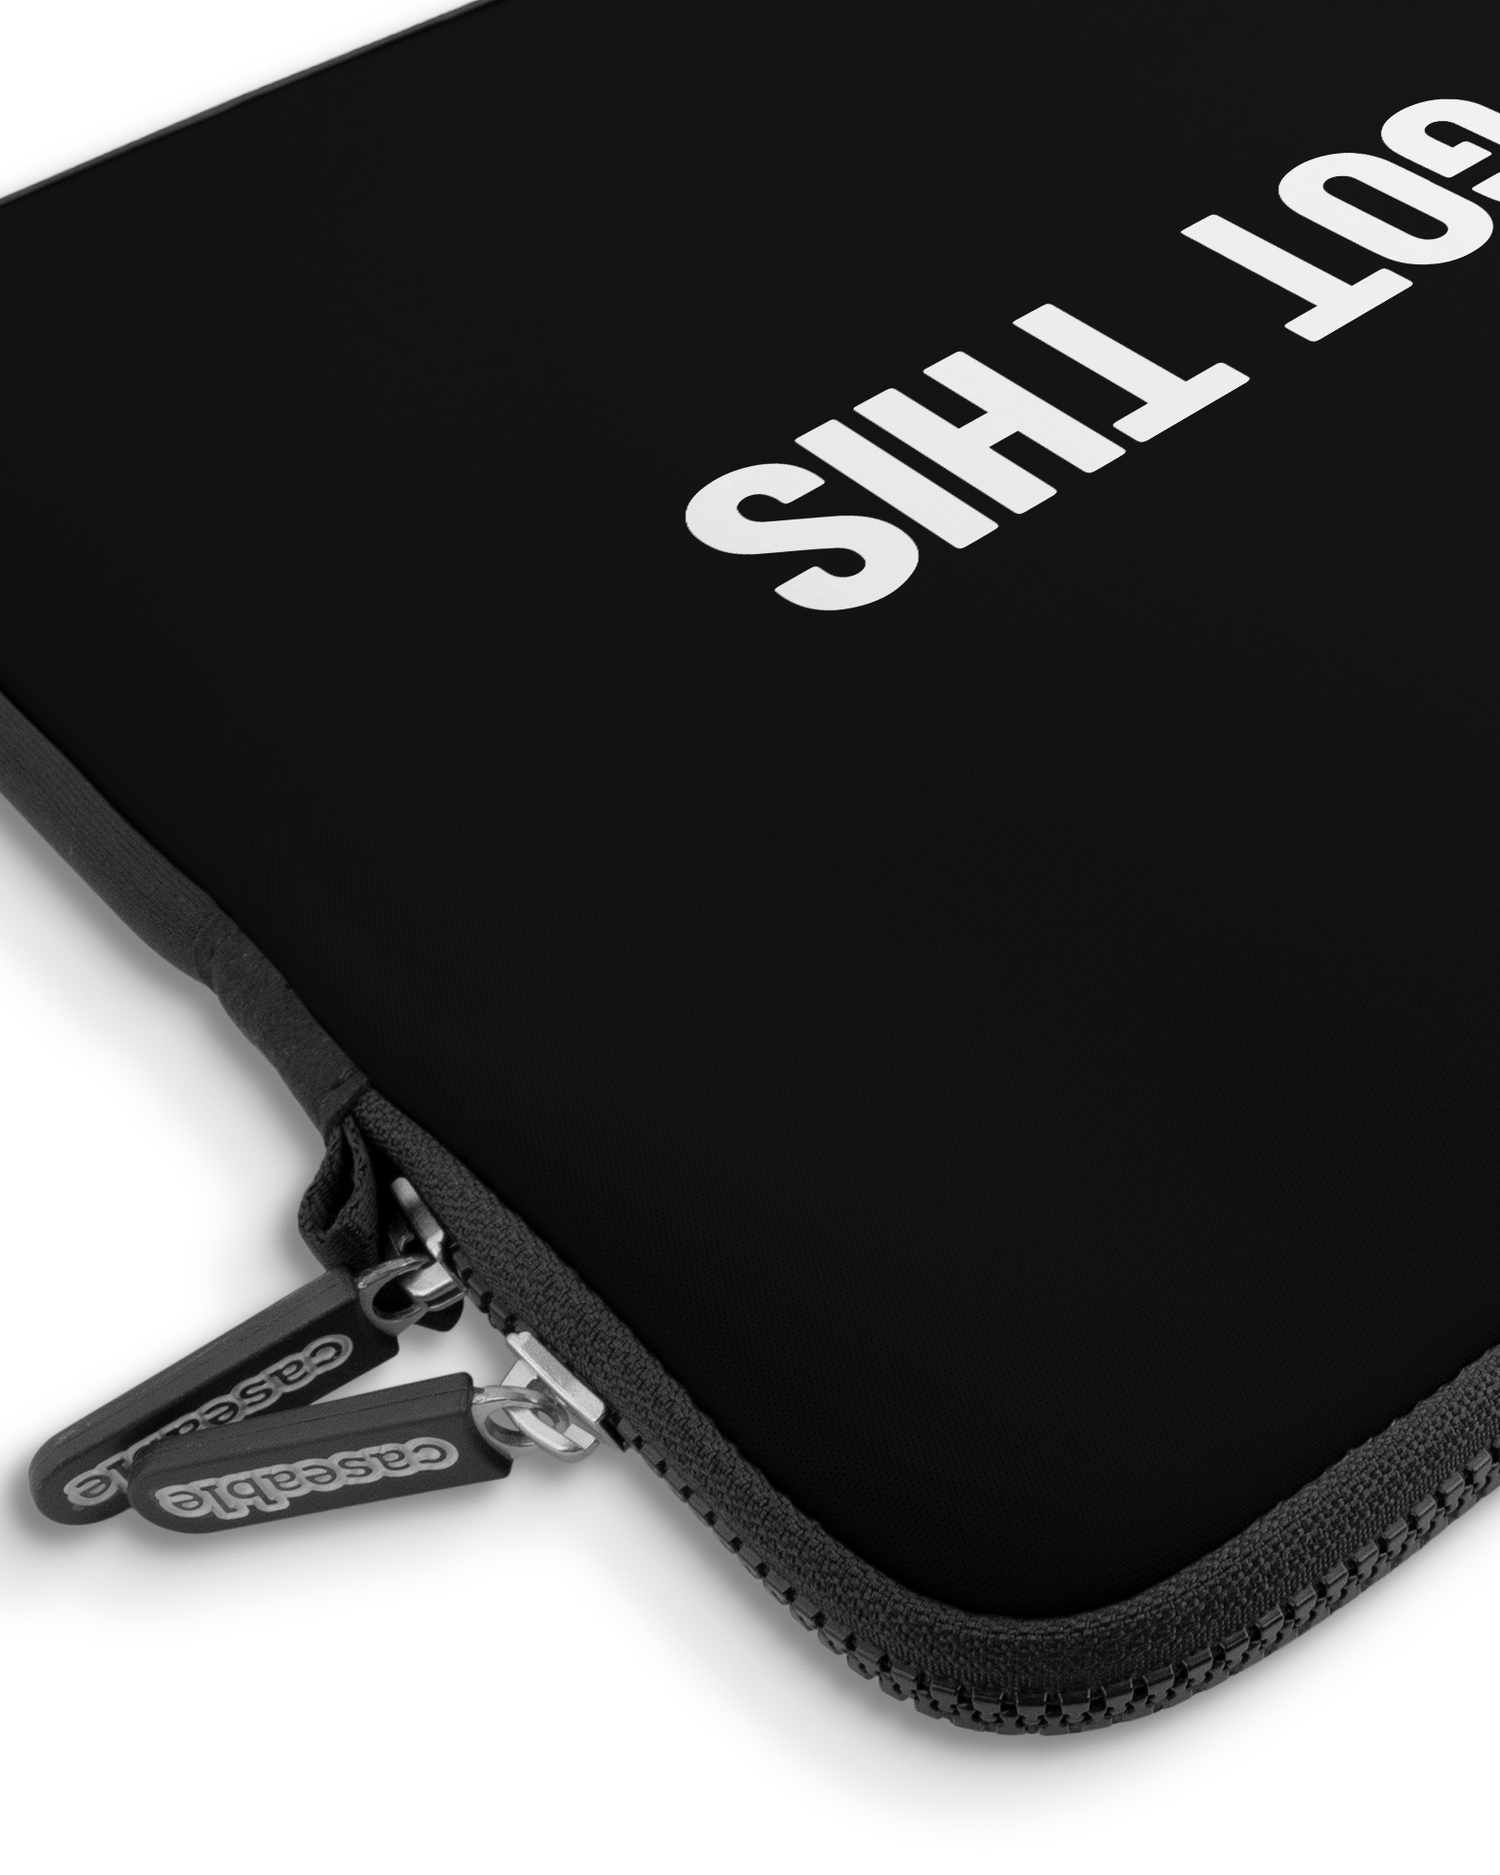 You Got This Black Premium Laptoptasche 15 Zoll mit Gerät im Inneren